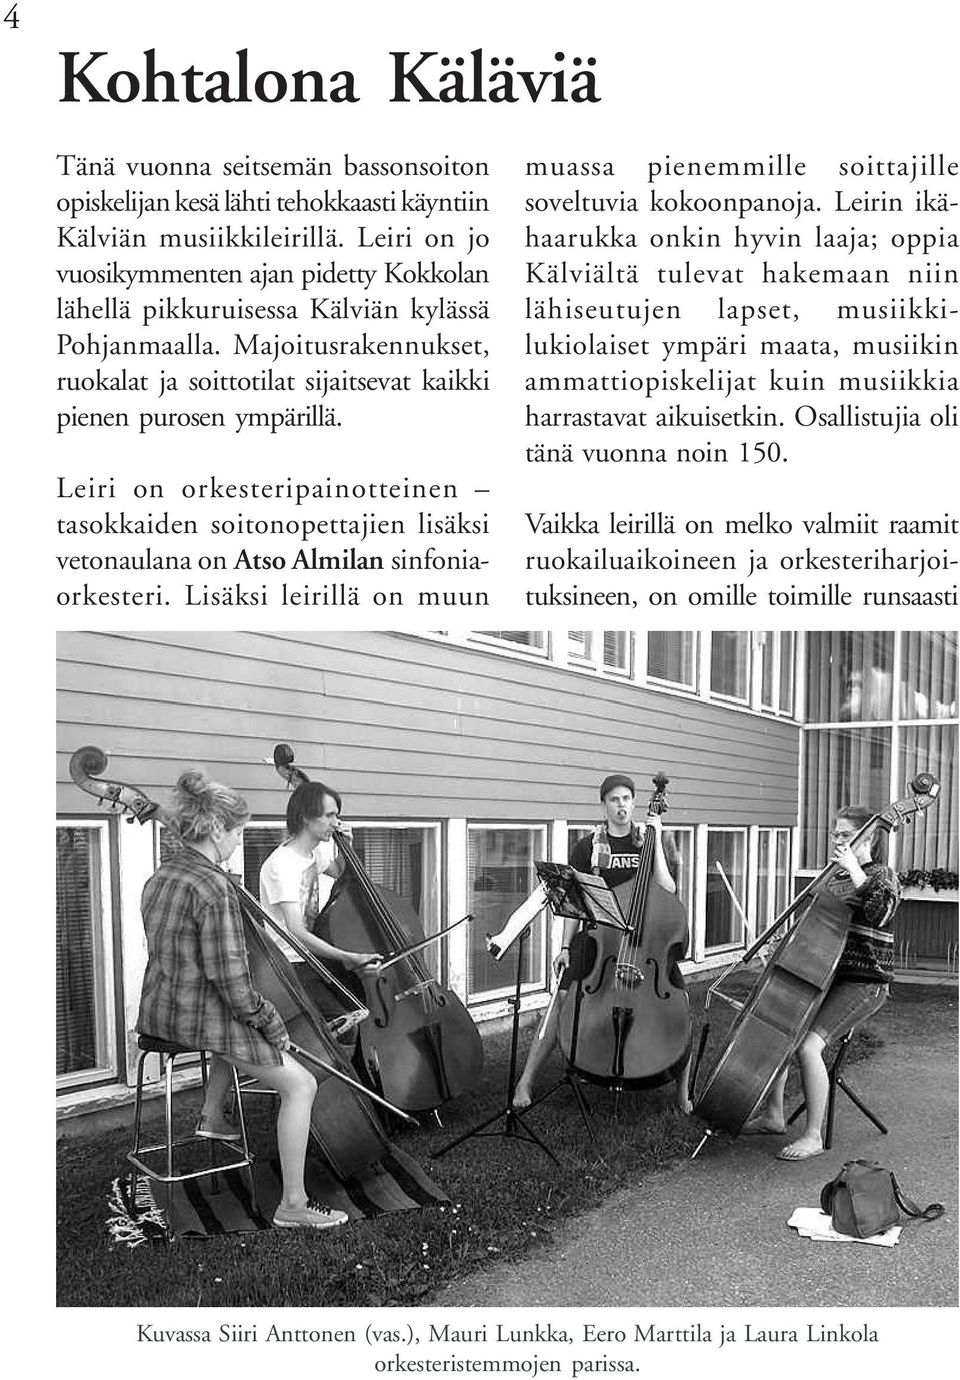 Leiri on orkesteripainotteinen tasokkaiden soitonopettajien lisäksi vetonaulana on Atso Almilan sinfoniaorkesteri. Lisäksi leirillä on muun muassa pienemmille soittajille soveltuvia kokoonpanoja.